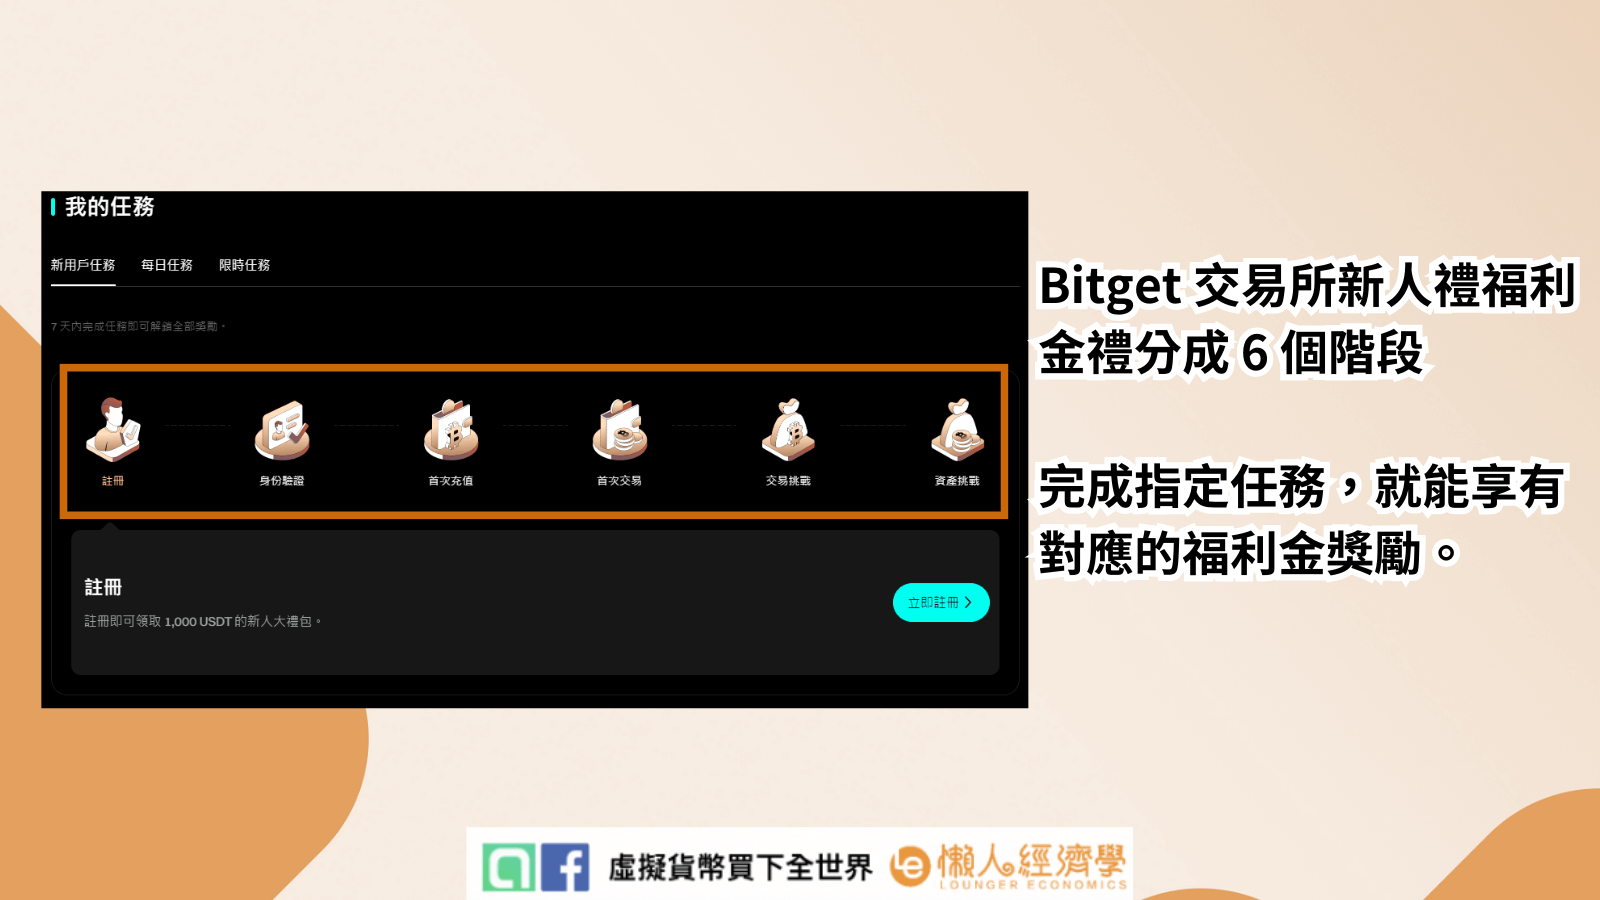 Bitget 交易所新人禮福利金禮分成 6 個階段完成指定任務，就能享有對應的福利金獎勵。